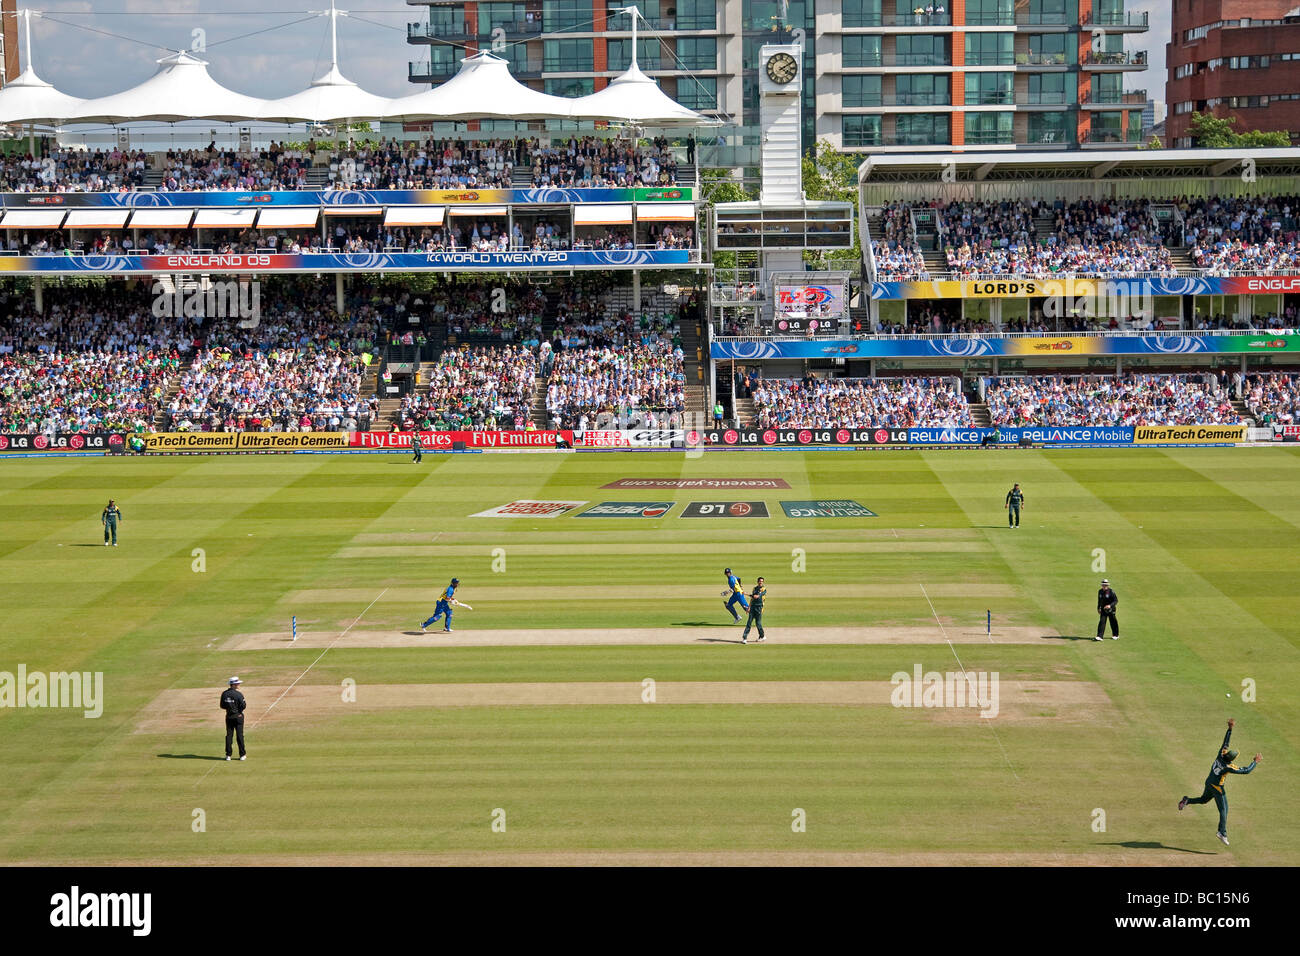 Una vista generale del terreno durante il mondo ICC venti20 finale tra Pakistan e Sri Lanka al Signore il 21 giugno 2009. Foto Stock